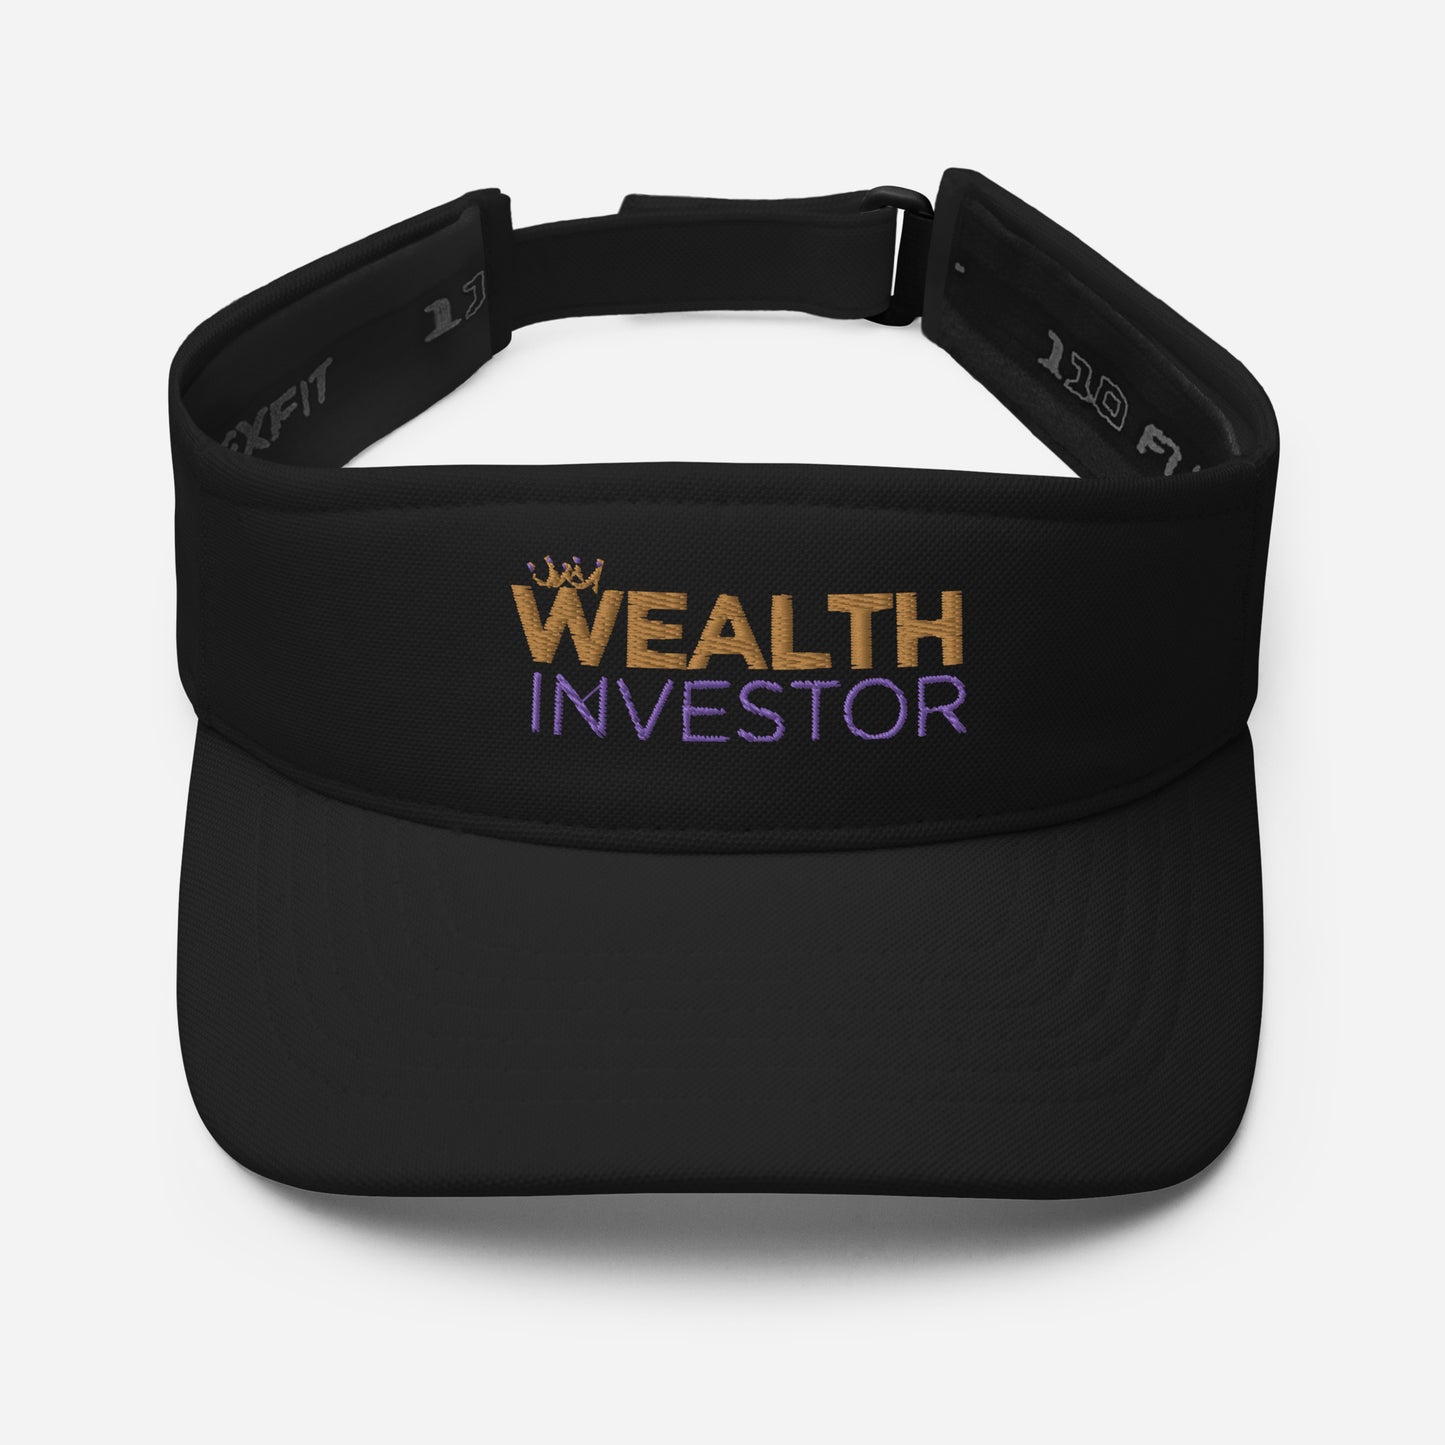 Wealth Investor Visor